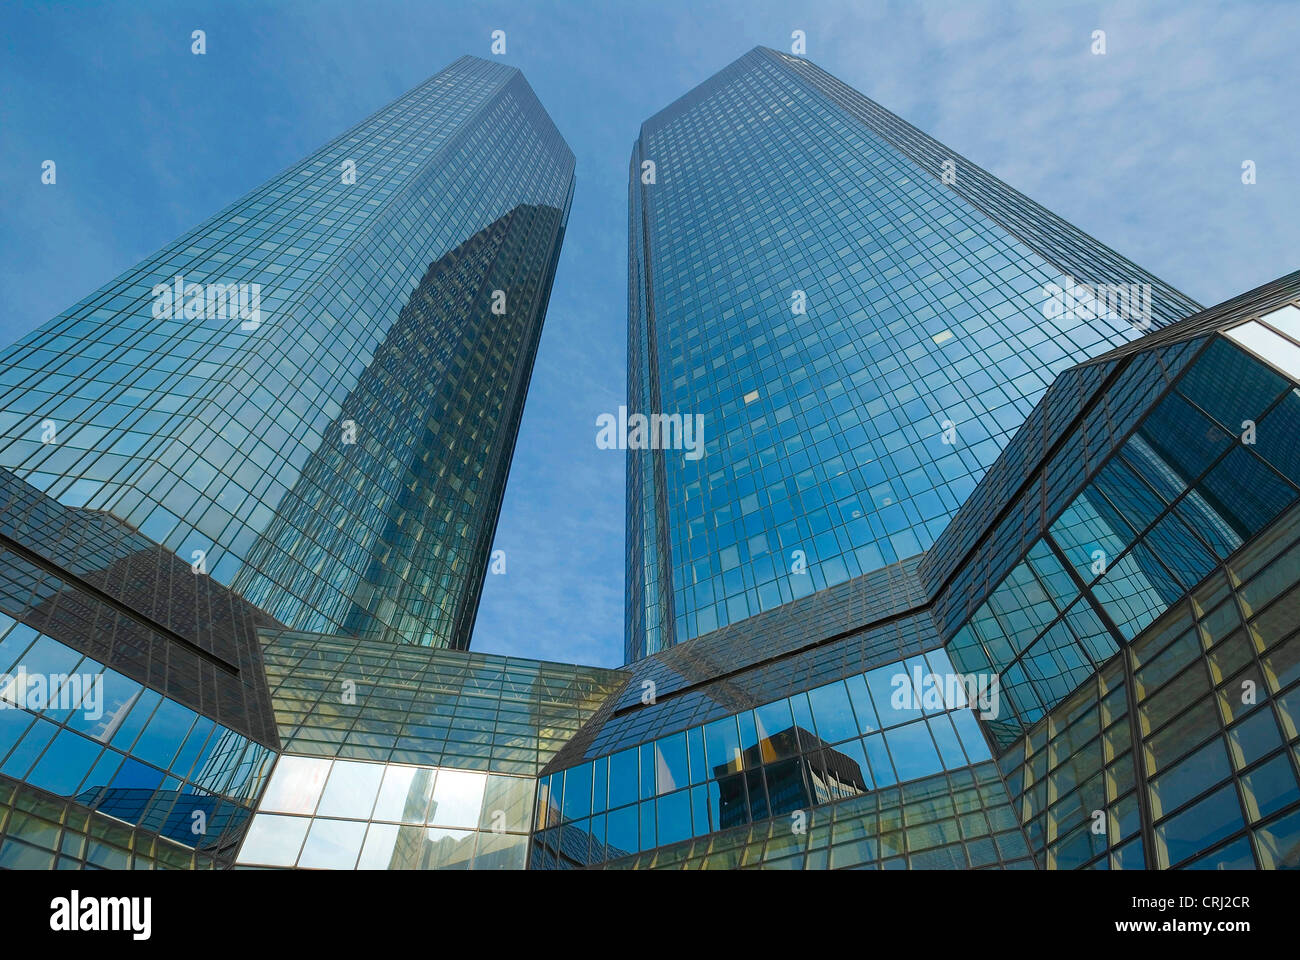 La banque allemande, la Deutsche Bank à Francfort am Main, Allemagne, Hesse, Frankfurt/Main Banque D'Images